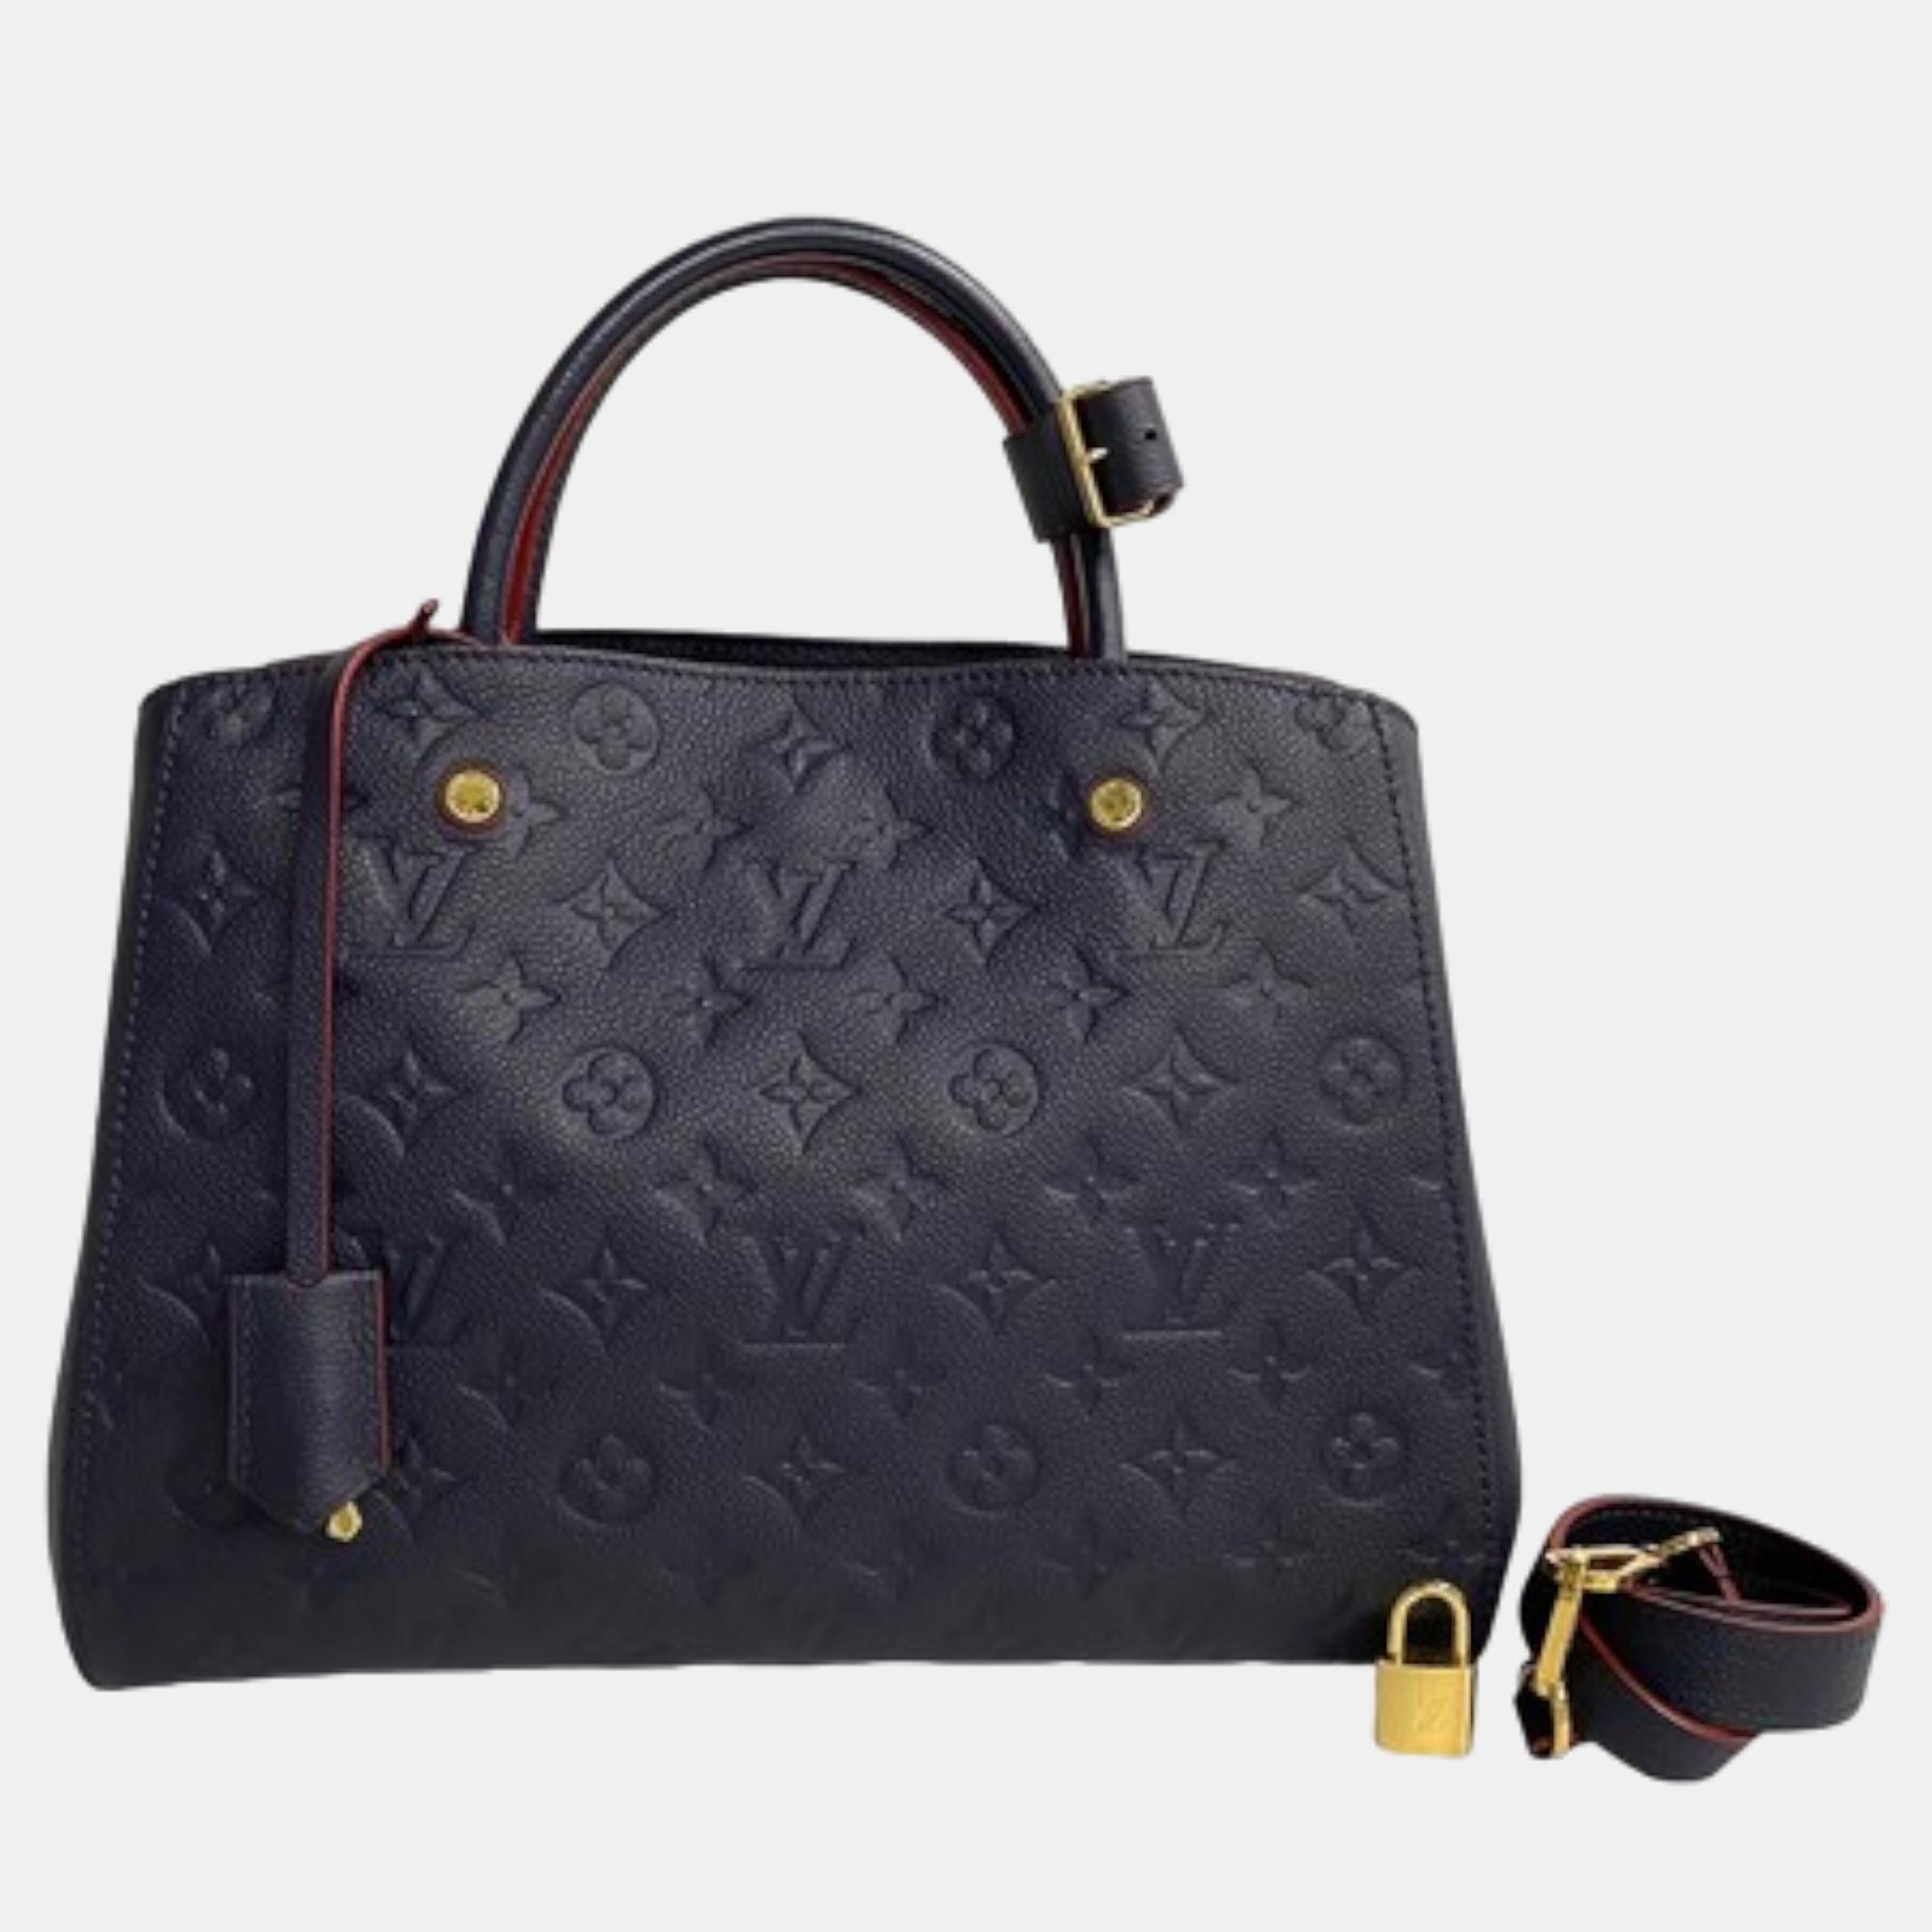 Louis vuitton navy blue monogram empriente leather montaigne mm satchel